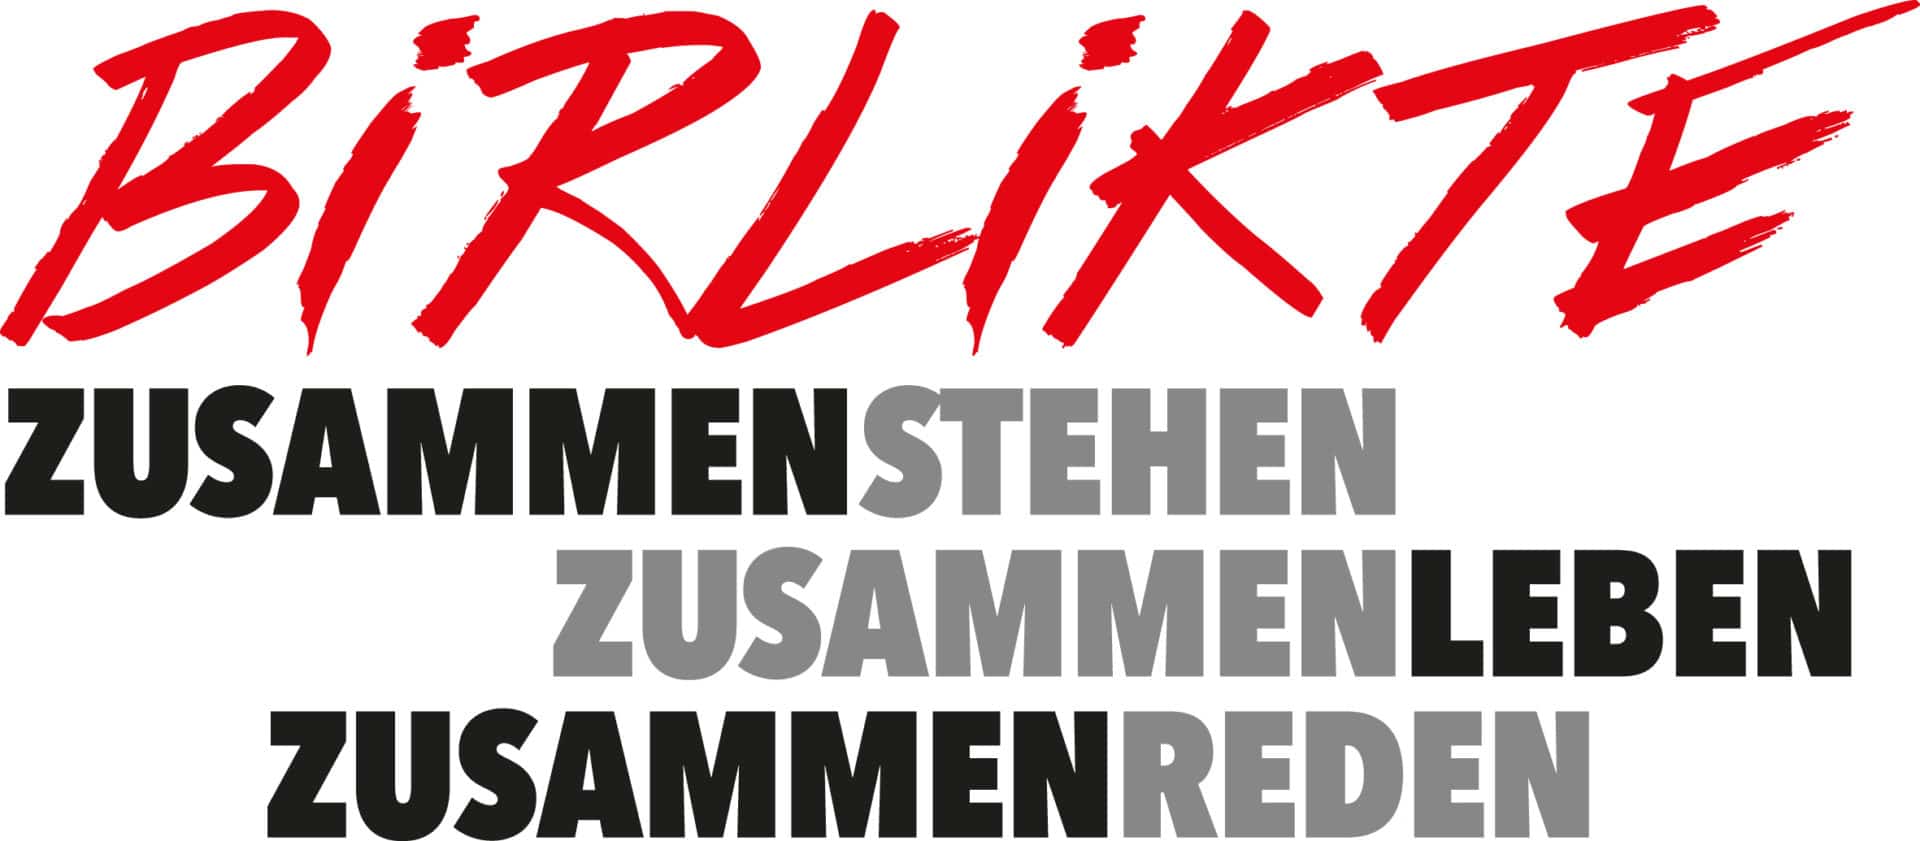 Birlikte 2016: Kölner Festival gegen rechte Gewalt geht in die dritte Runde  copyright: Birlikte